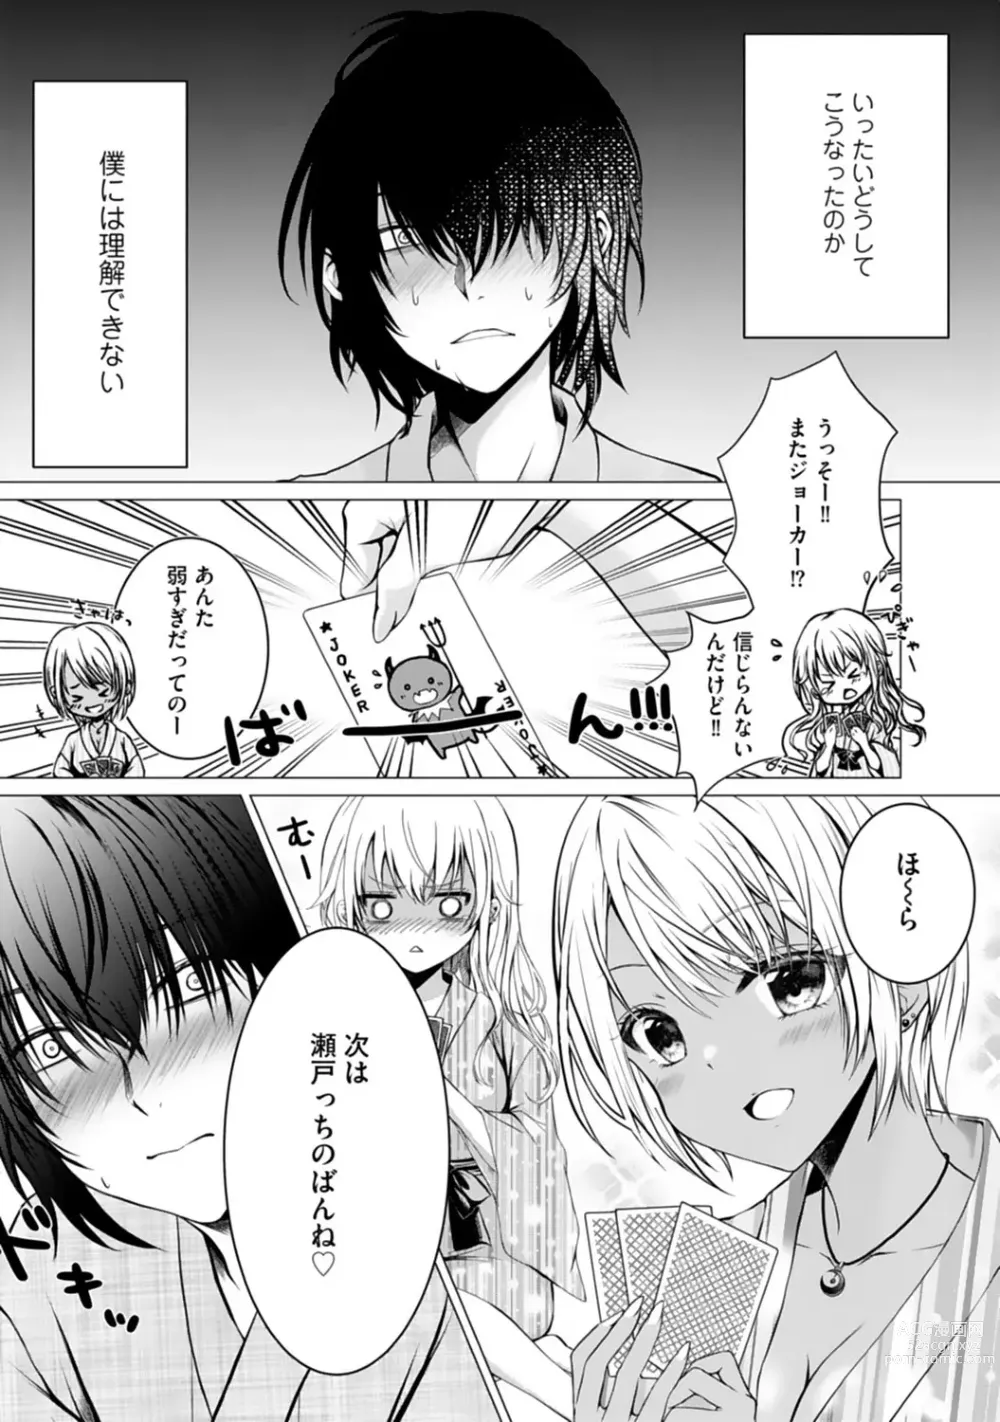 Page 3 of manga Bocchi no Boku demo, Kuzu no Yarichin ni Nareru tte Honto desu ka?